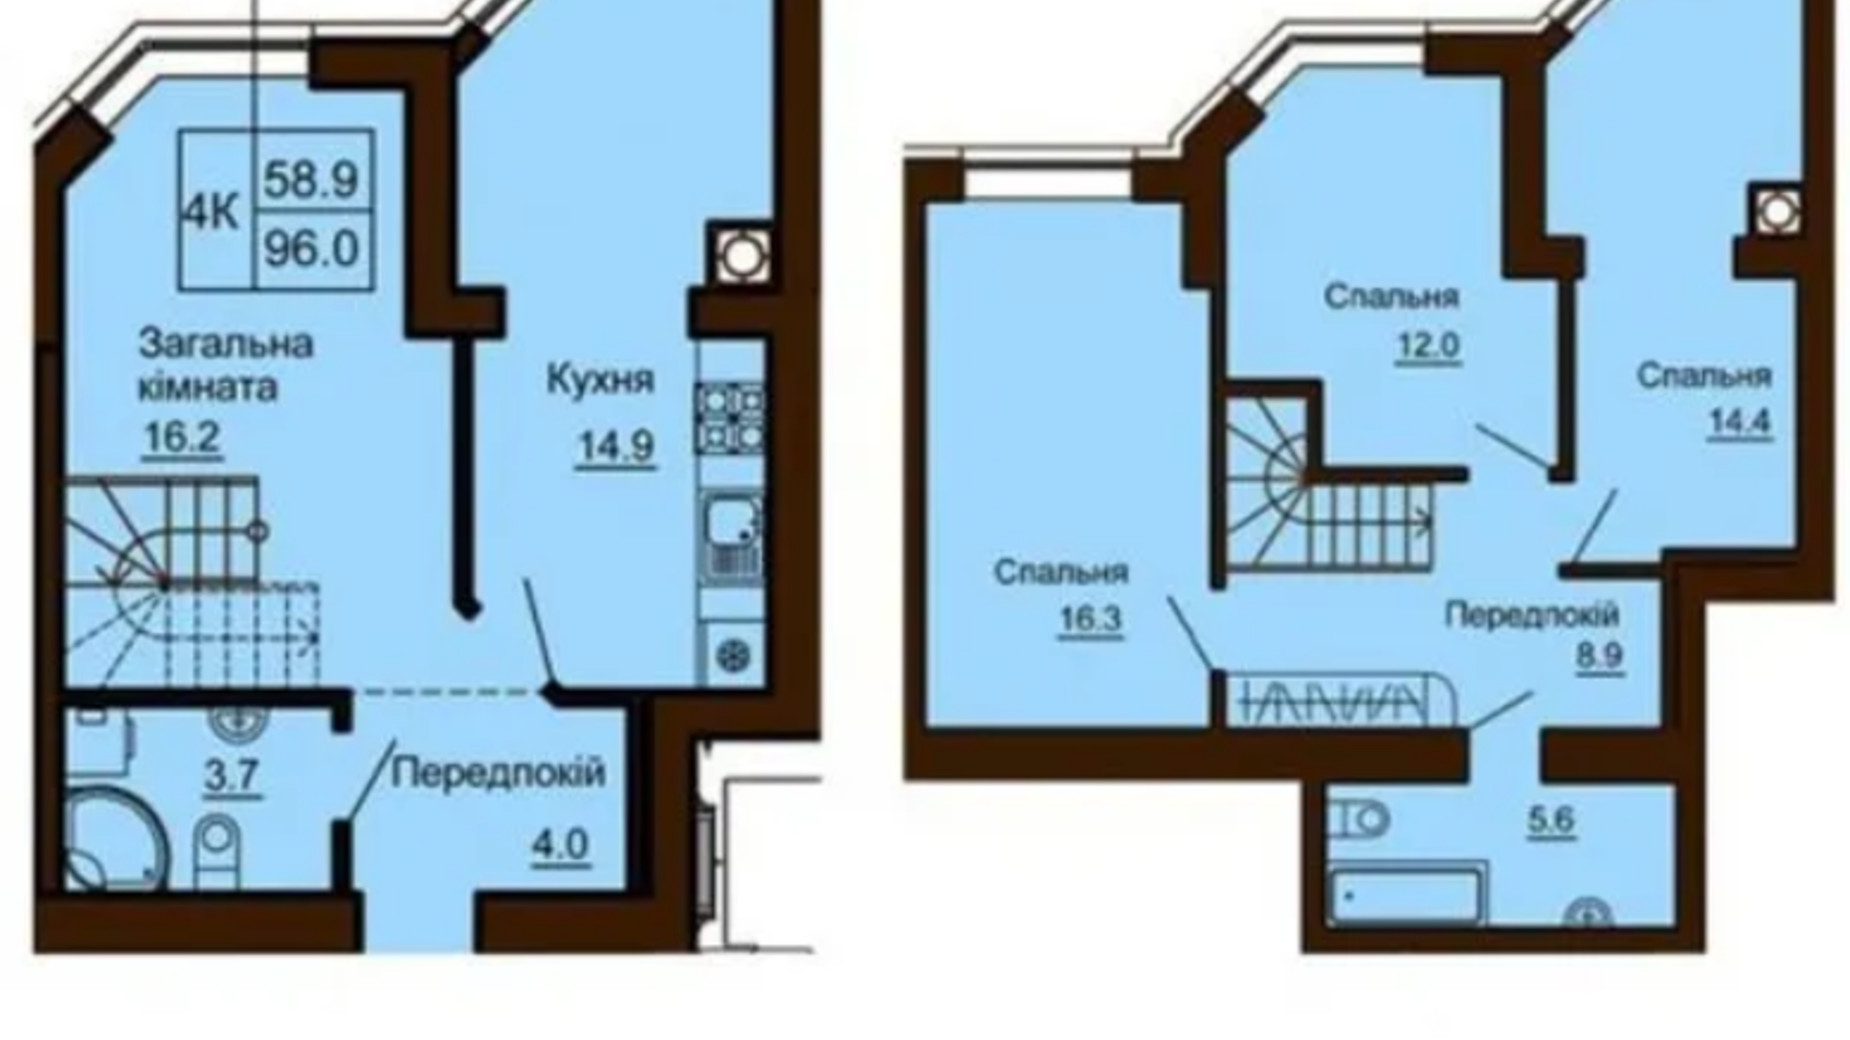 Планировка много­уровневой квартиры в ЖК София Клубный 96.6 м², фото 366573